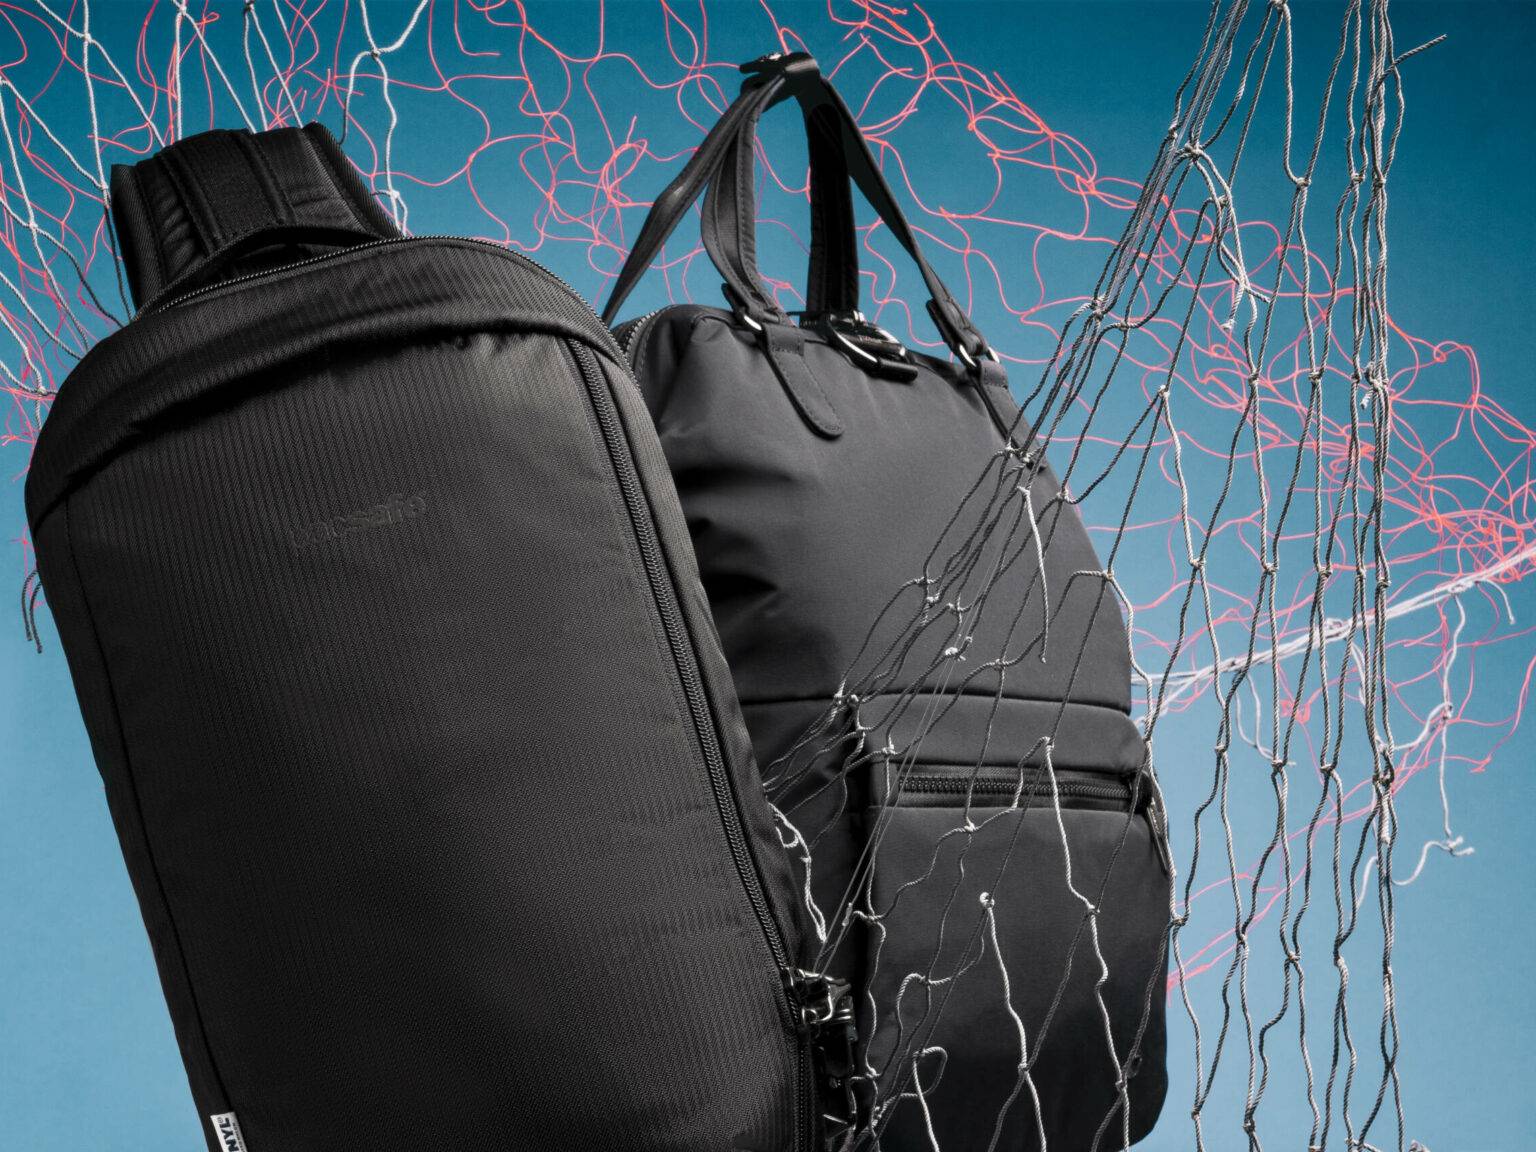 Ein stabiles Netz aus widerstandsfähigem, dünnem Spezial-Edelstahl-Kabelmaterial von Pacsafe, sichert den Rucksack auf Reisen.